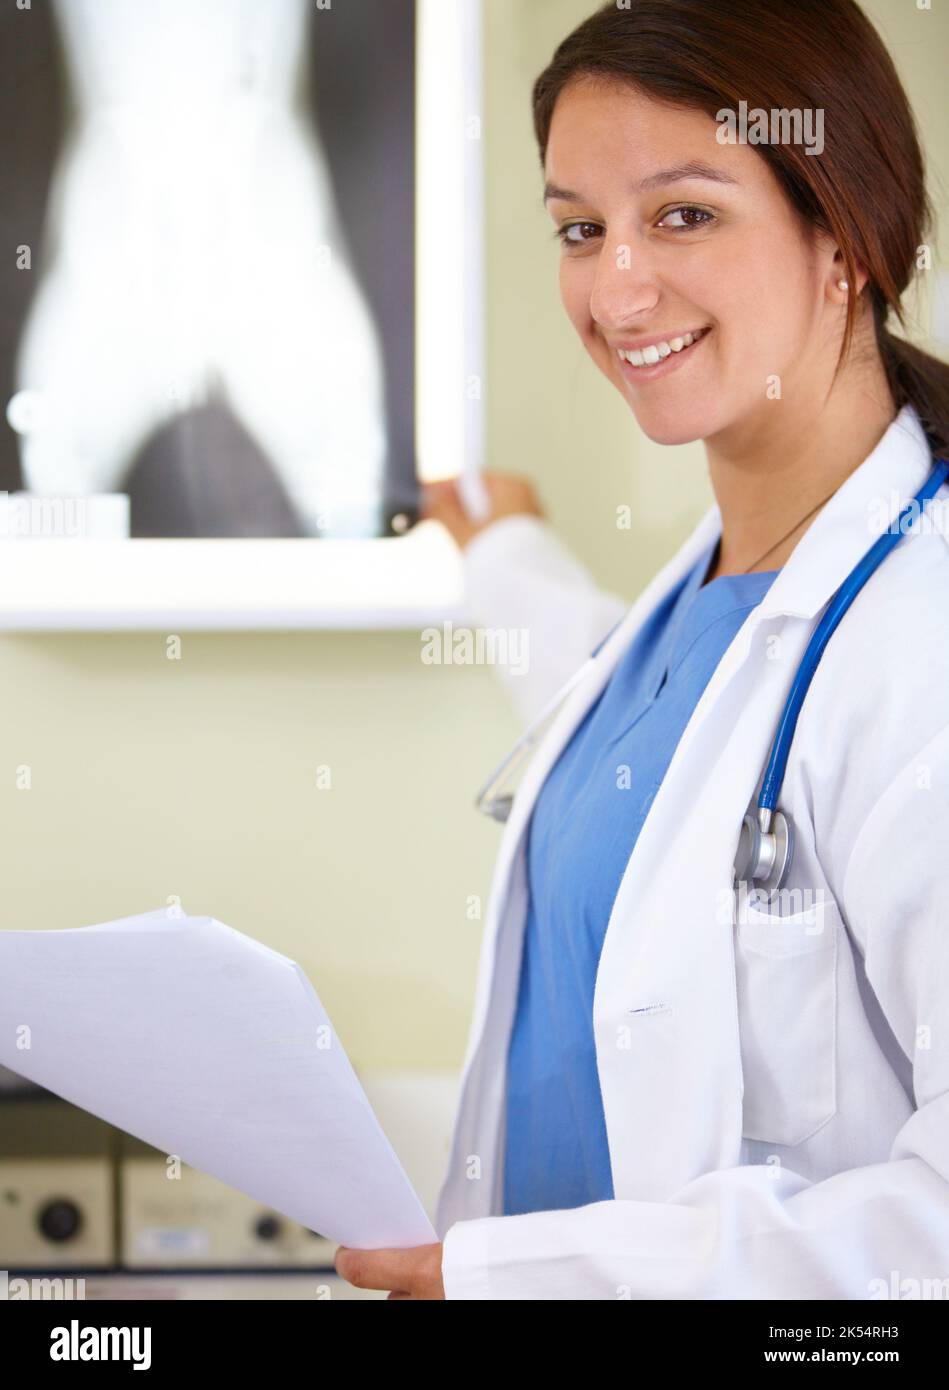 Aufzeigen der Lösung des Problems -X-Ray. Porträt einer jungen Frau in der Ärzteschaft, die auf eine Röntgenaufnahme zeigt. Stockfoto